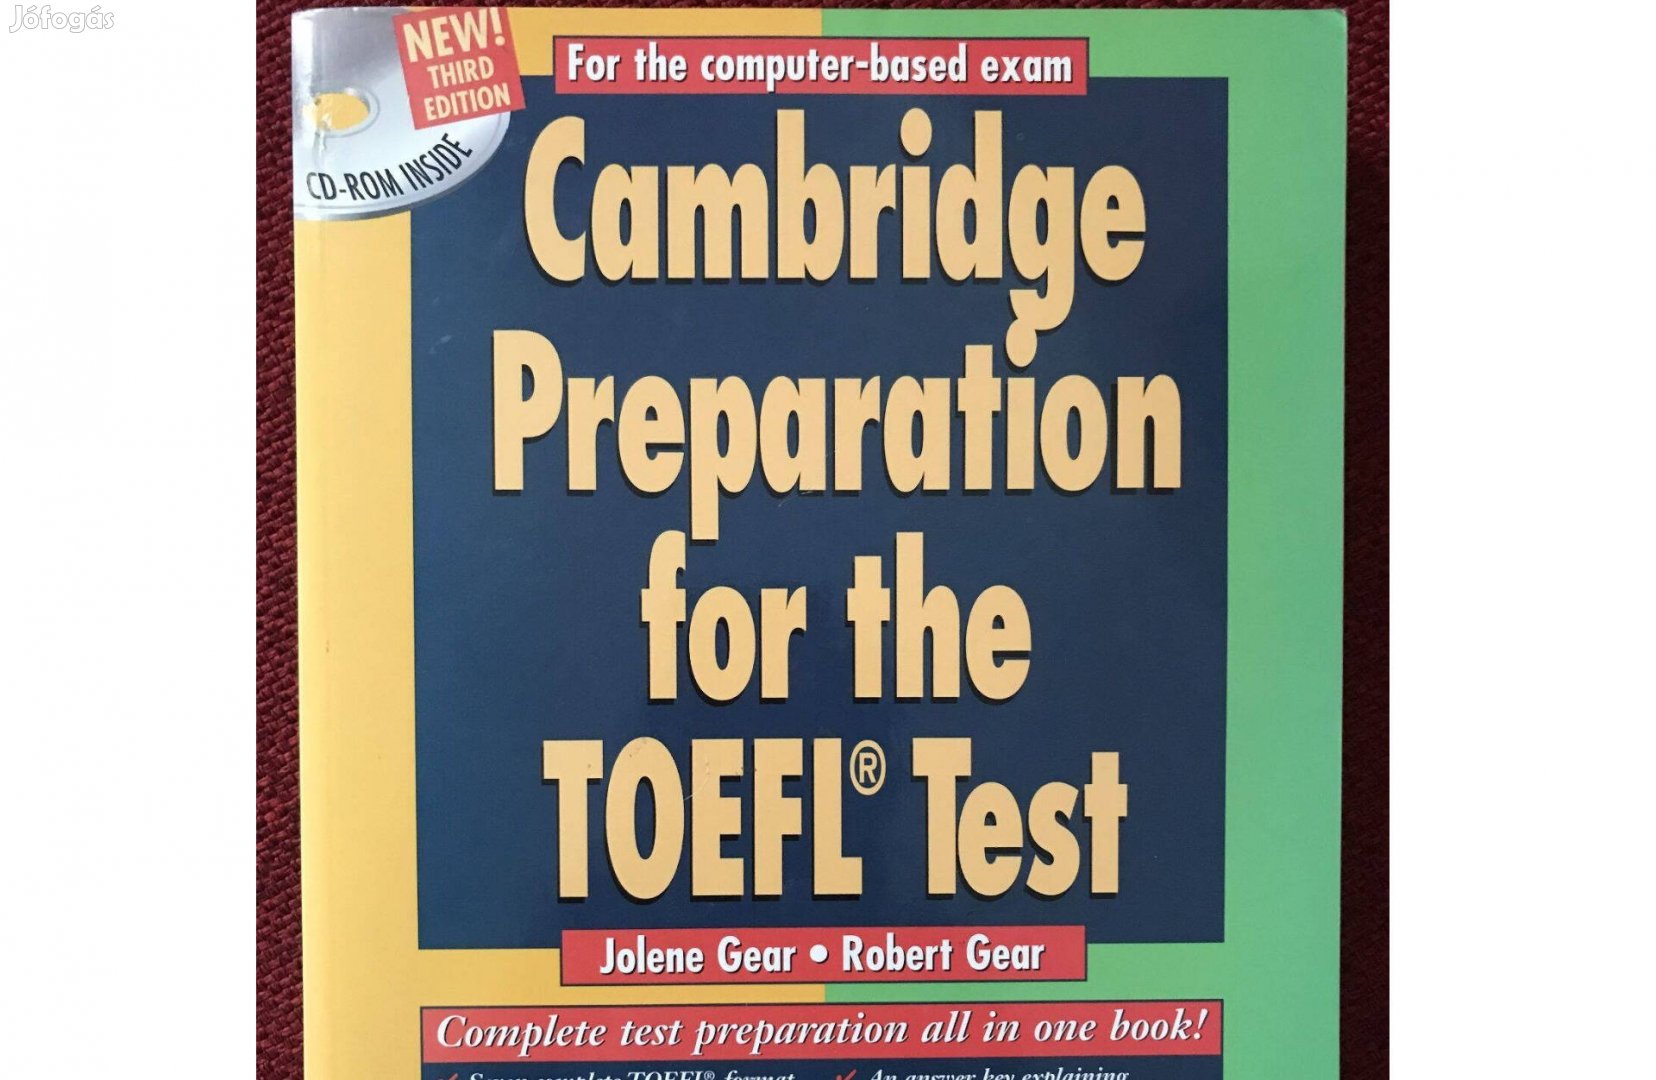 Cambridge Preparation for the TOEFL Test (köny+CD), újszerű állapotban